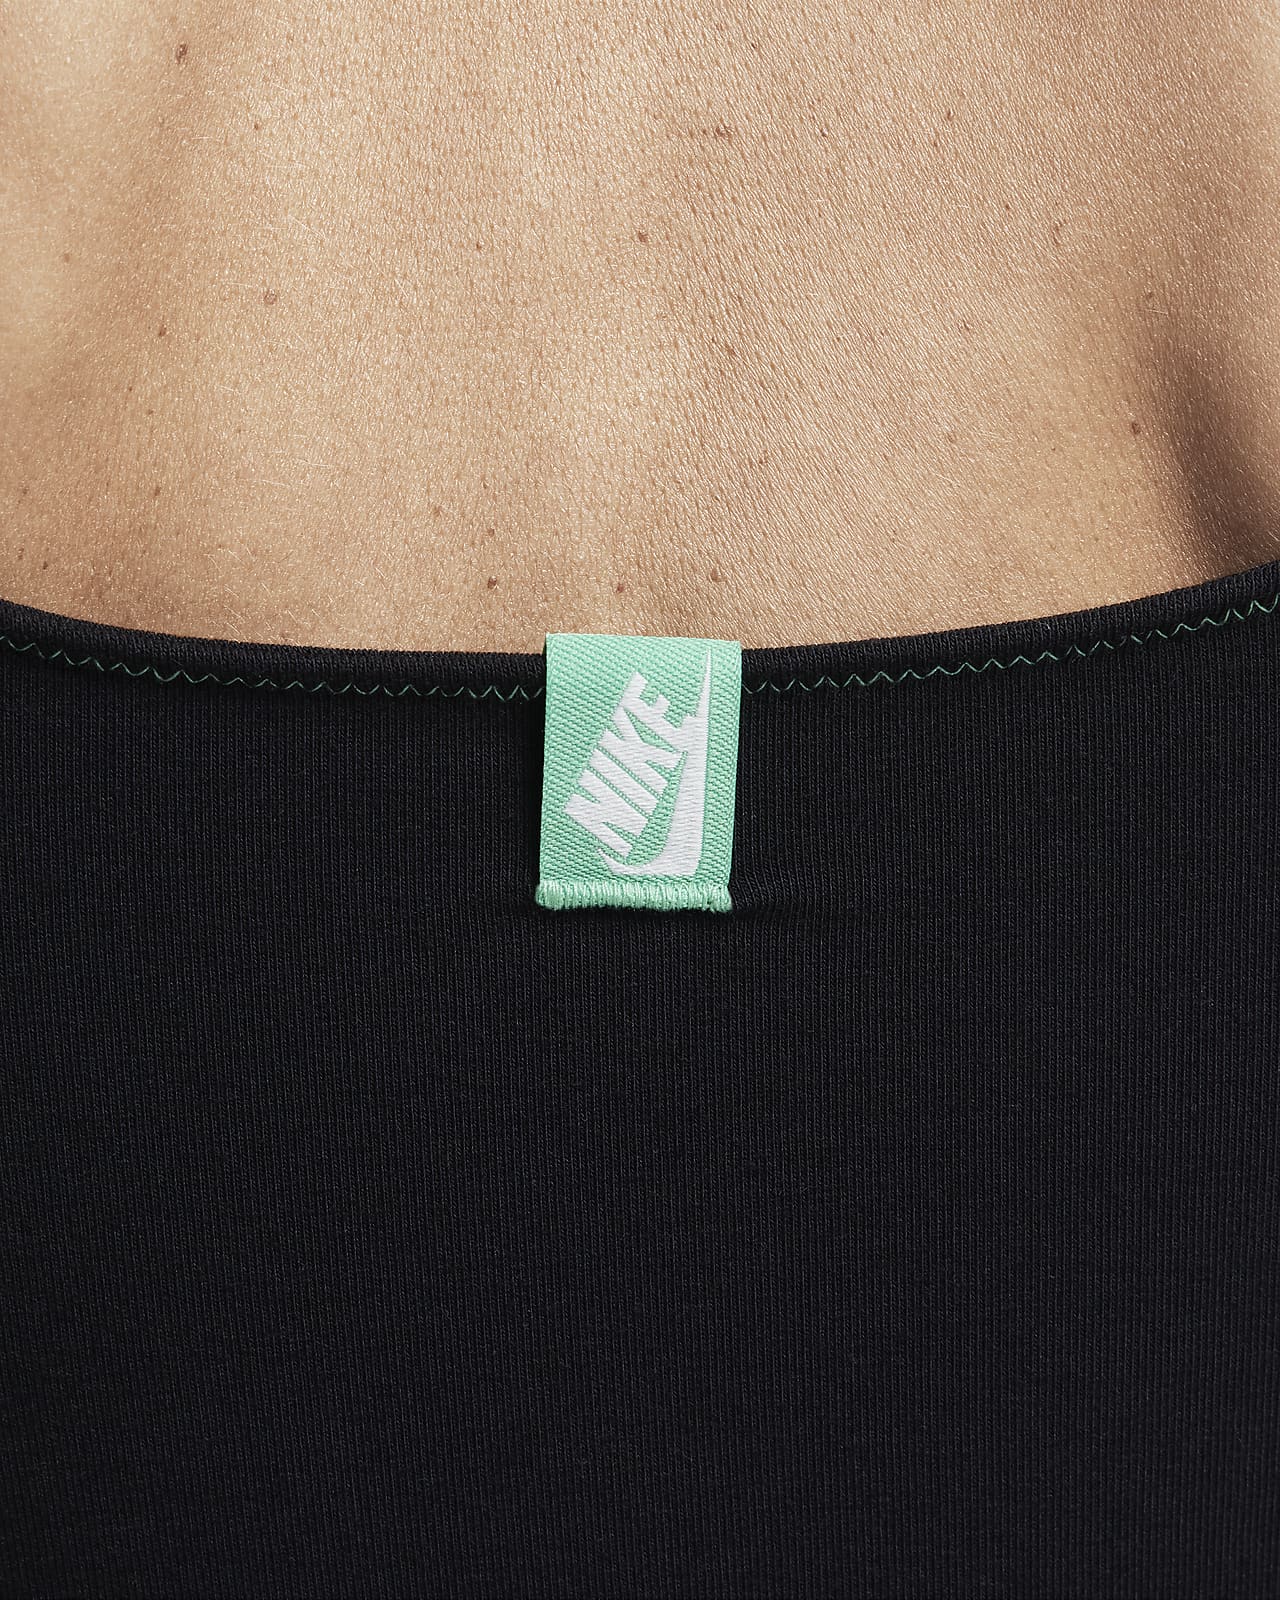 Nike Sportswear Women's Bodysuit.